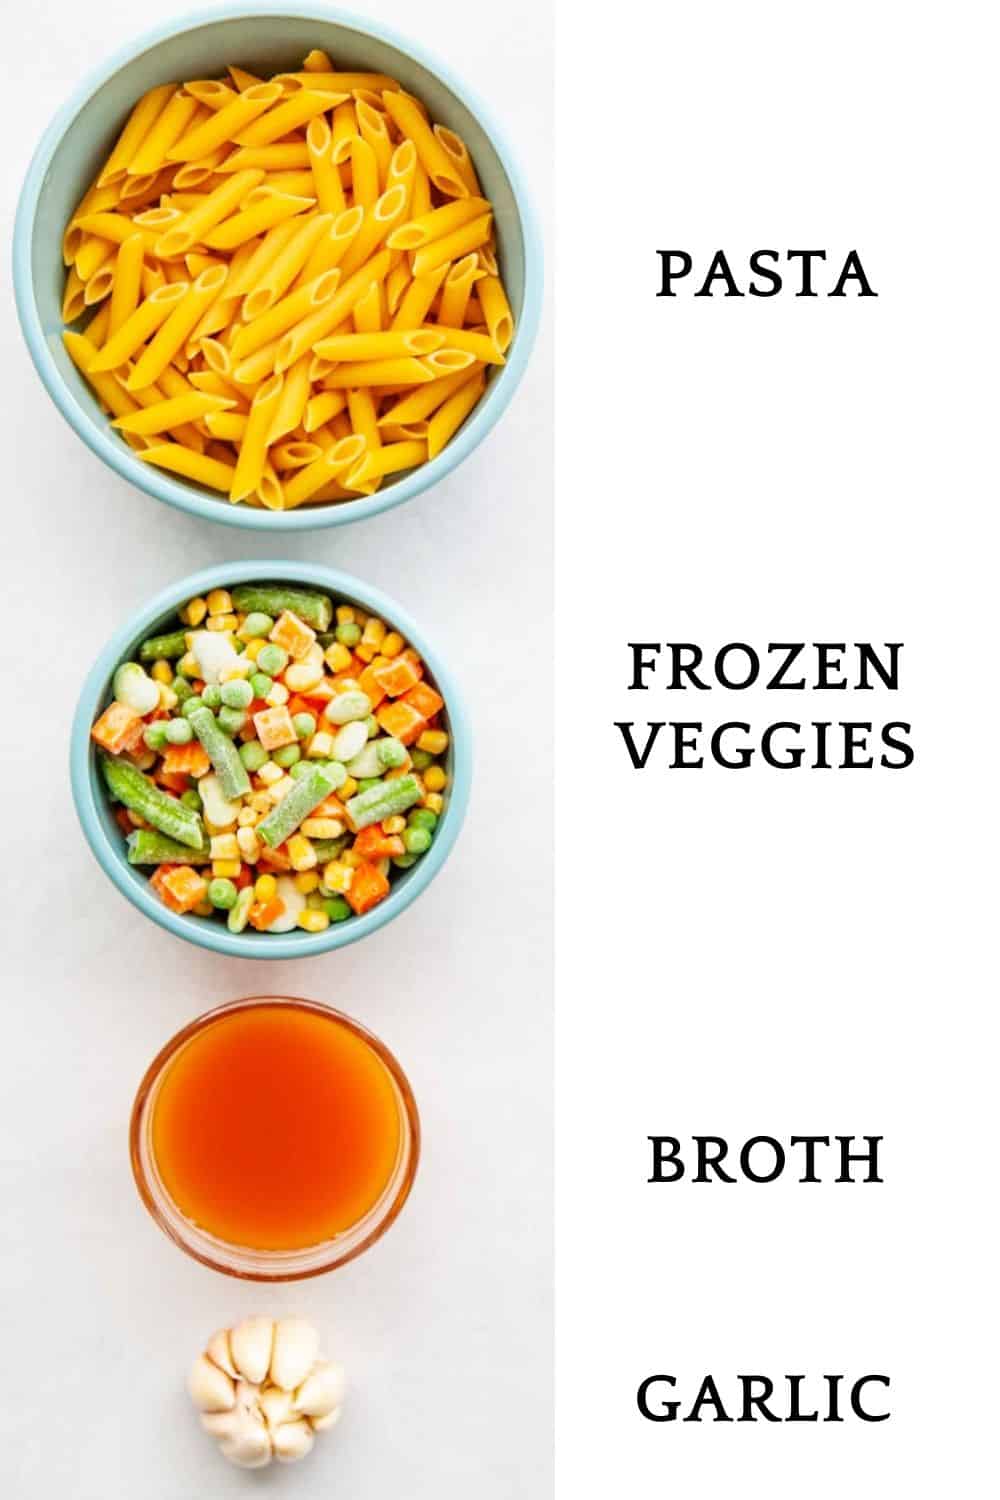 ingredients for frozen veggie pasta: dried pasta, frozen veggies, broth and garlic